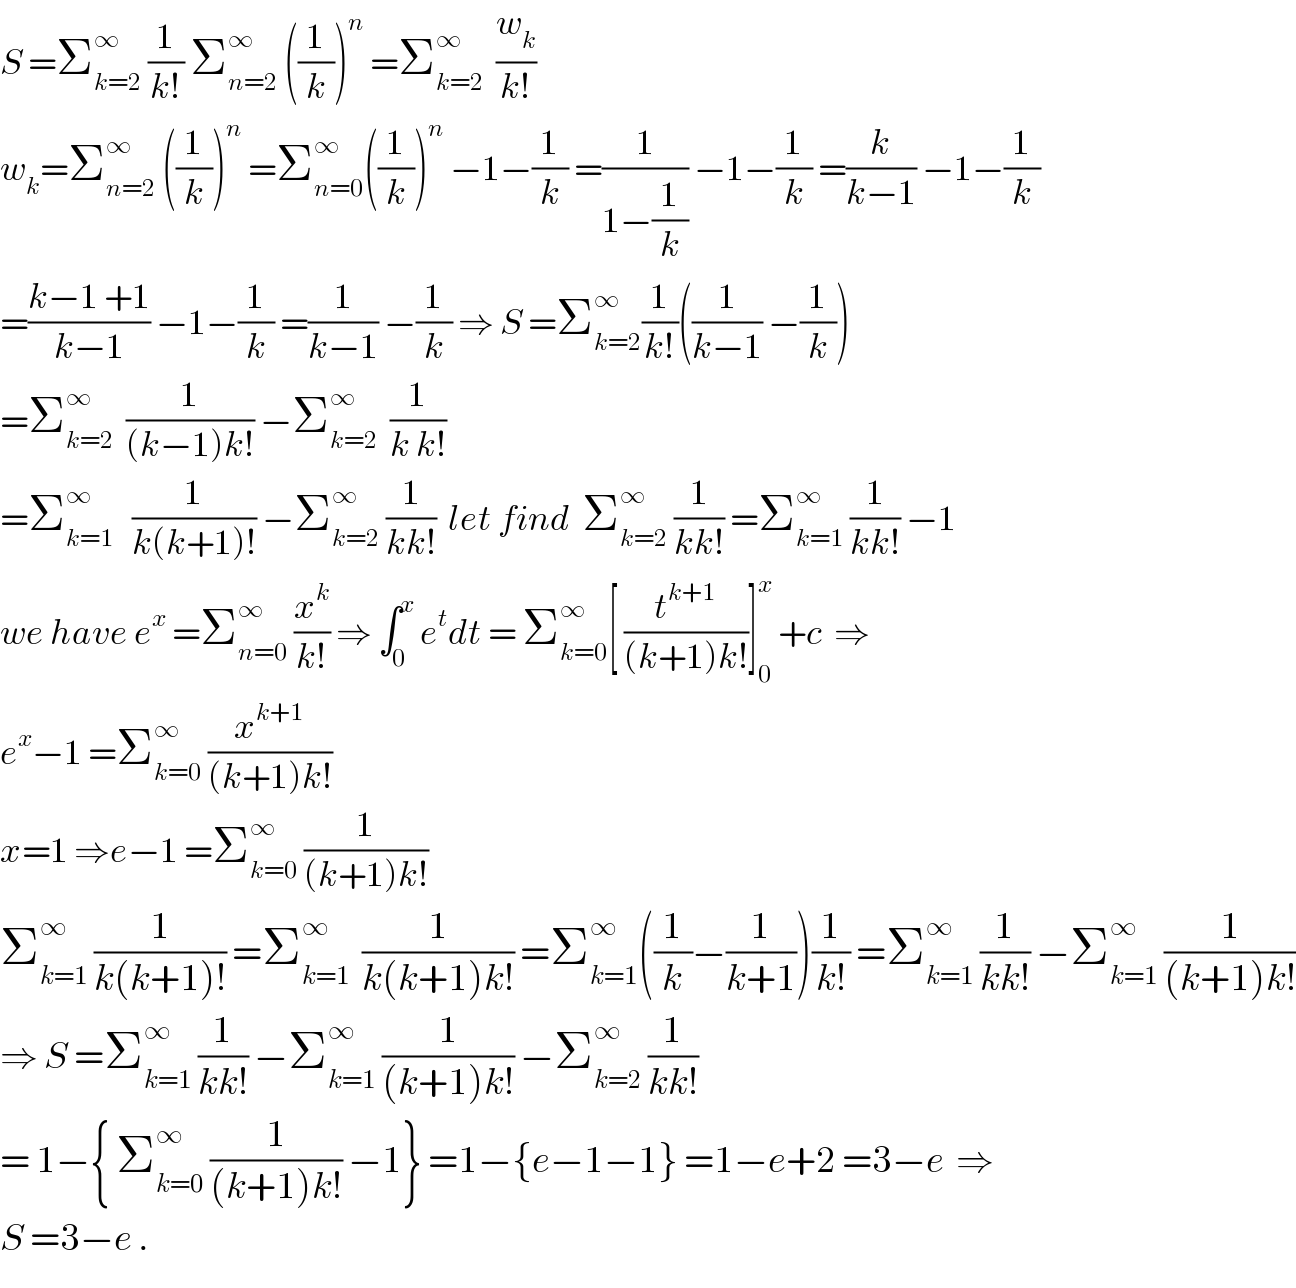 S =Σ_(k=2) ^∞  (1/(k!)) Σ_(n=2) ^∞  ((1/k))^n  =Σ_(k=2) ^∞   (w_k /(k!))  w_k =Σ_(n=2) ^∞  ((1/k))^n  =Σ_(n=0) ^∞ ((1/k))^n  −1−(1/k) =(1/(1−(1/k))) −1−(1/k) =(k/(k−1)) −1−(1/k)  =((k−1 +1)/(k−1)) −1−(1/k) =(1/(k−1)) −(1/k) ⇒ S =Σ_(k=2) ^∞ (1/(k!))((1/(k−1)) −(1/k))  =Σ_(k=2) ^∞   (1/((k−1)k!)) −Σ_(k=2) ^∞   (1/(k k!))  =Σ_(k=1) ^∞    (1/(k(k+1)!)) −Σ_(k=2) ^∞  (1/(kk!))  let find  Σ_(k=2) ^∞  (1/(kk!)) =Σ_(k=1) ^∞  (1/(kk!)) −1  we have e^x  =Σ_(n=0) ^∞  (x^k /(k!)) ⇒ ∫_0 ^x  e^t dt = Σ_(k=0) ^∞ [ (t^(k+1) /((k+1)k!))]_0 ^x  +c  ⇒  e^x −1 =Σ_(k=0) ^∞  (x^(k+1) /((k+1)k!))  x=1 ⇒e−1 =Σ_(k=0) ^∞  (1/((k+1)k!))  Σ_(k=1) ^∞  (1/(k(k+1)!)) =Σ_(k=1) ^∞   (1/(k(k+1)k!)) =Σ_(k=1) ^∞ ((1/k)−(1/(k+1)))(1/(k!)) =Σ_(k=1) ^∞  (1/(kk!)) −Σ_(k=1) ^∞  (1/((k+1)k!))  ⇒ S =Σ_(k=1) ^∞  (1/(kk!)) −Σ_(k=1) ^∞  (1/((k+1)k!)) −Σ_(k=2) ^∞  (1/(kk!))  = 1−{ Σ_(k=0) ^∞  (1/((k+1)k!)) −1} =1−{e−1−1} =1−e+2 =3−e  ⇒  S =3−e .  